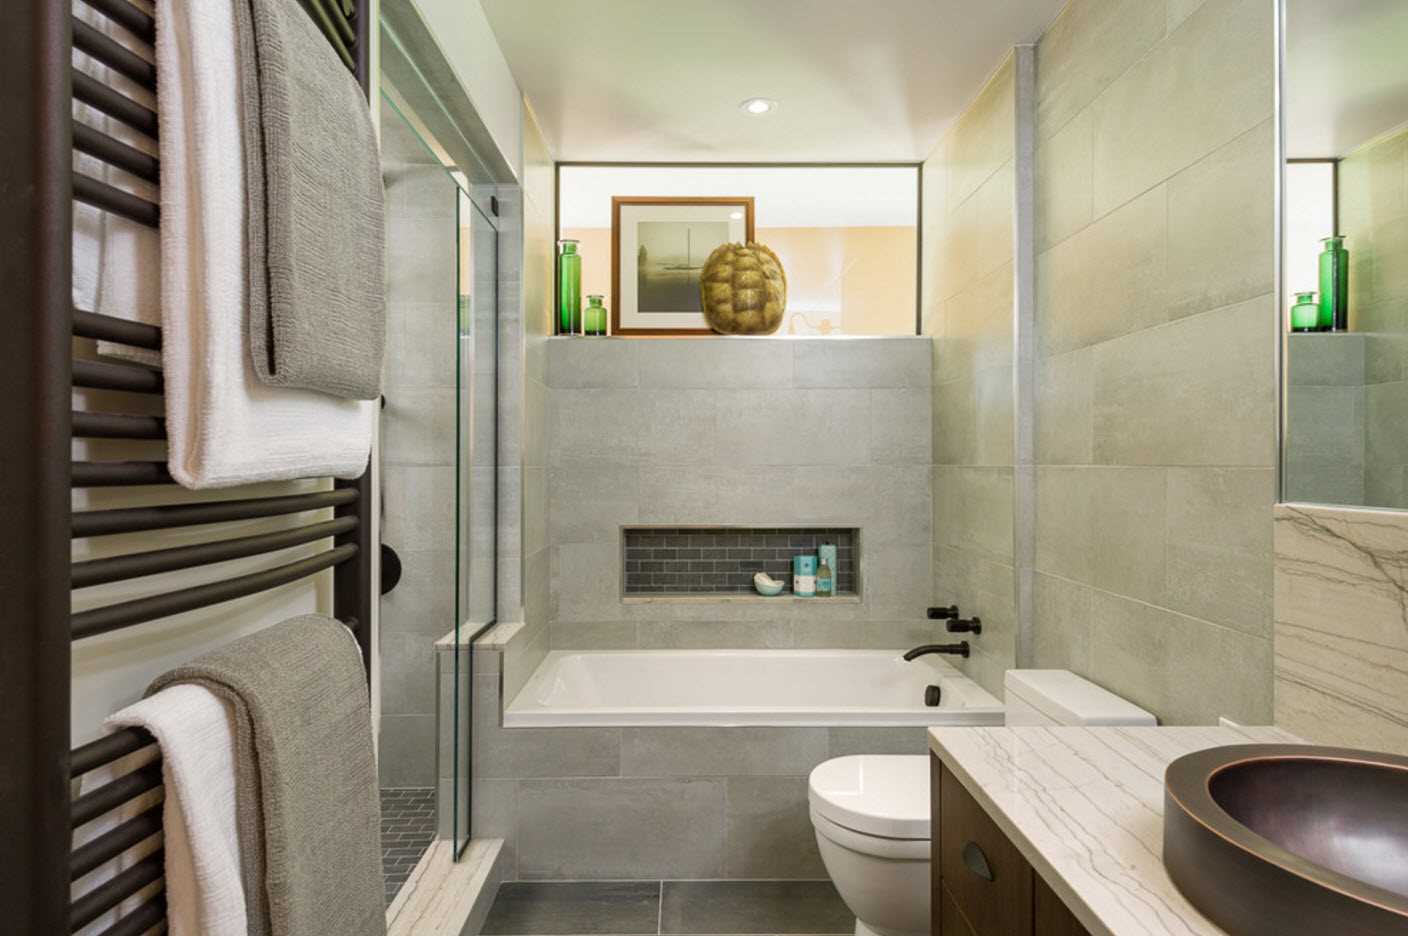 versie van de moderne stijl van de badkamer 2017